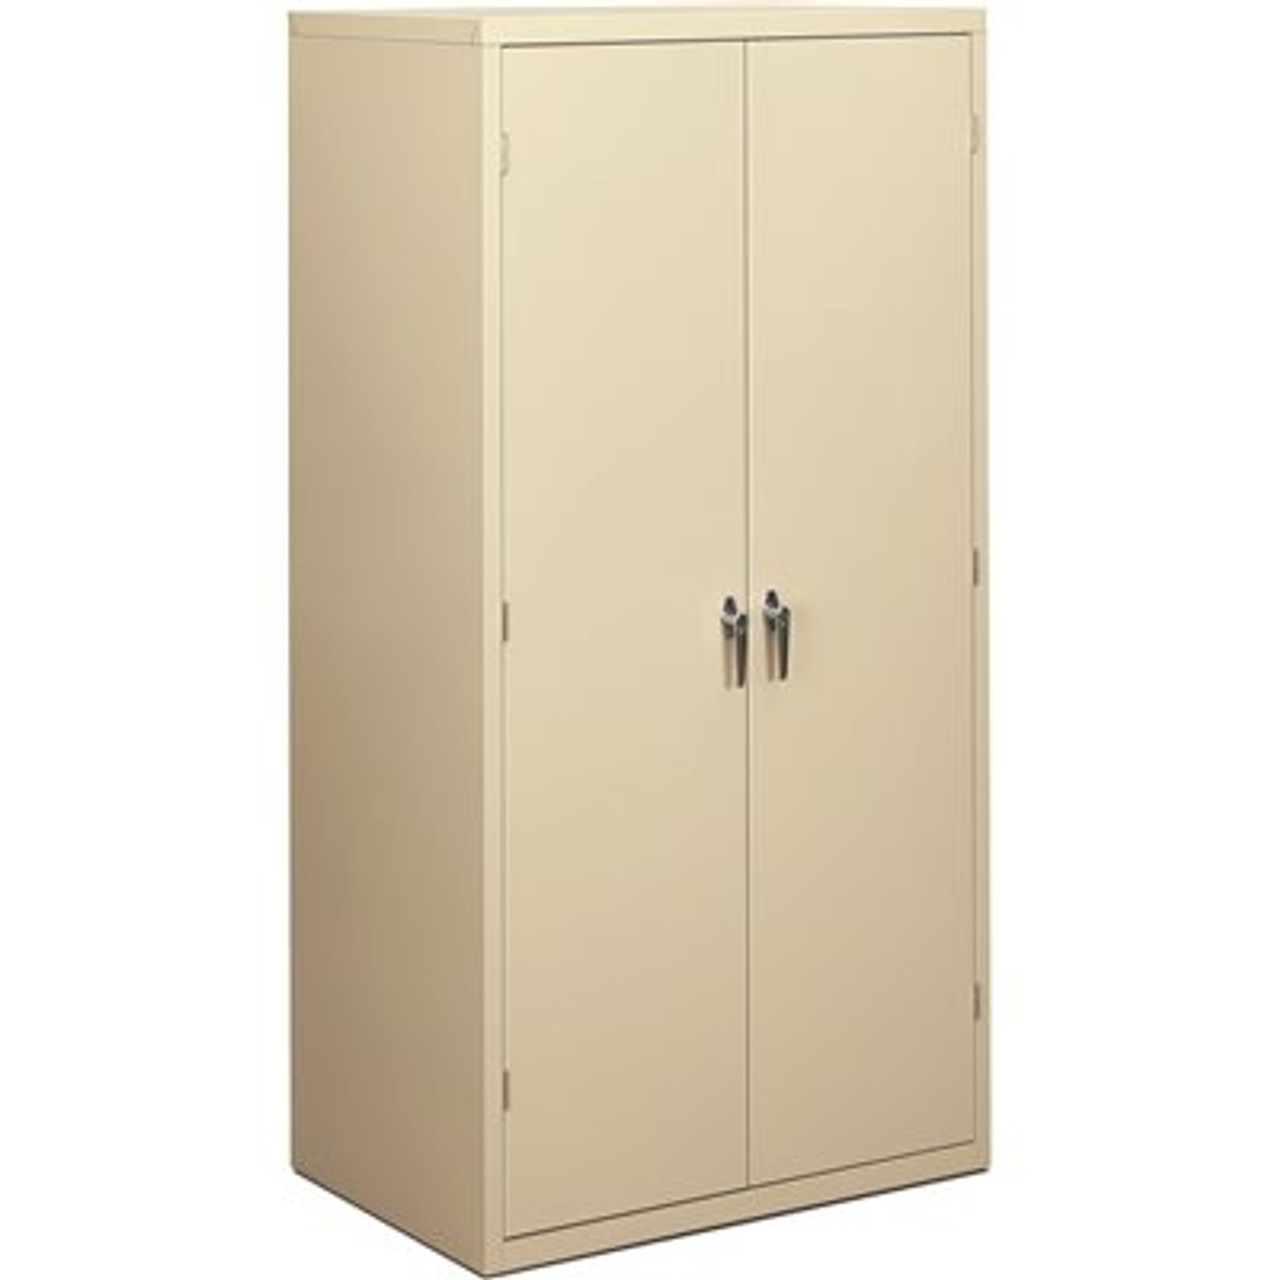 HON 24.25 in. D x 36 in. W x 71.25 in. H, Putty, Assembled Storage Cabinet